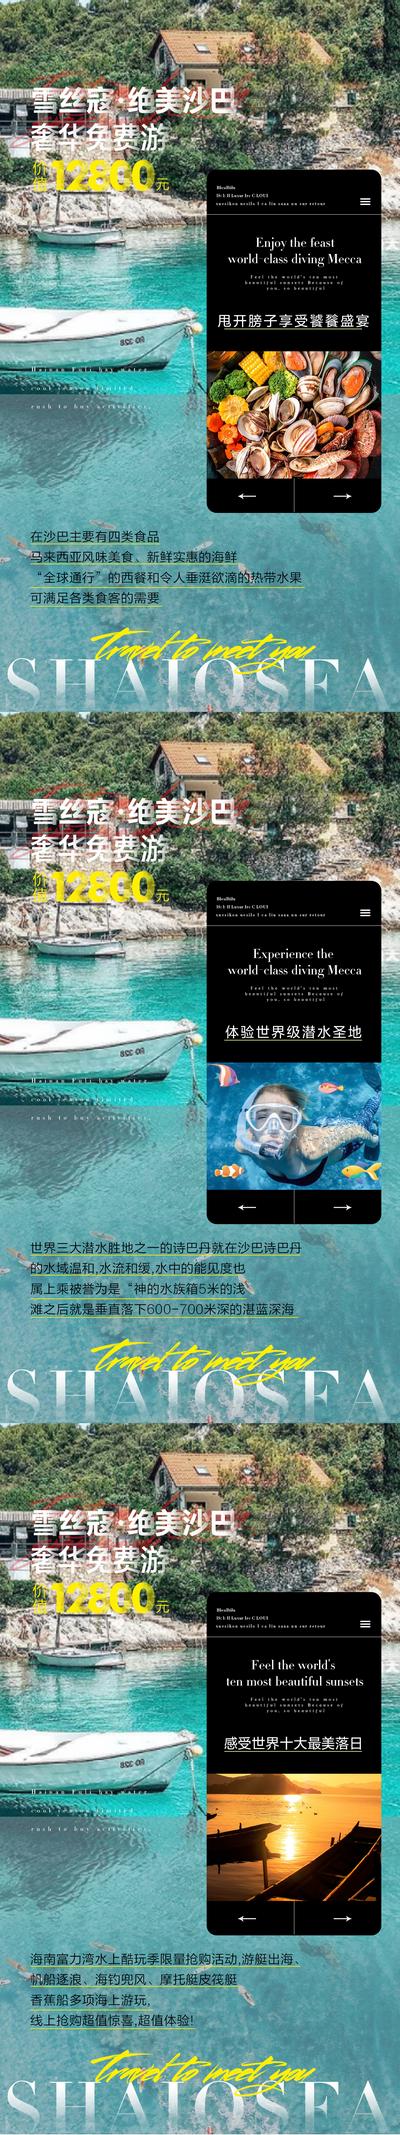 南门网 海报 旅游 沙巴 旅行社 出游 出行 潜水